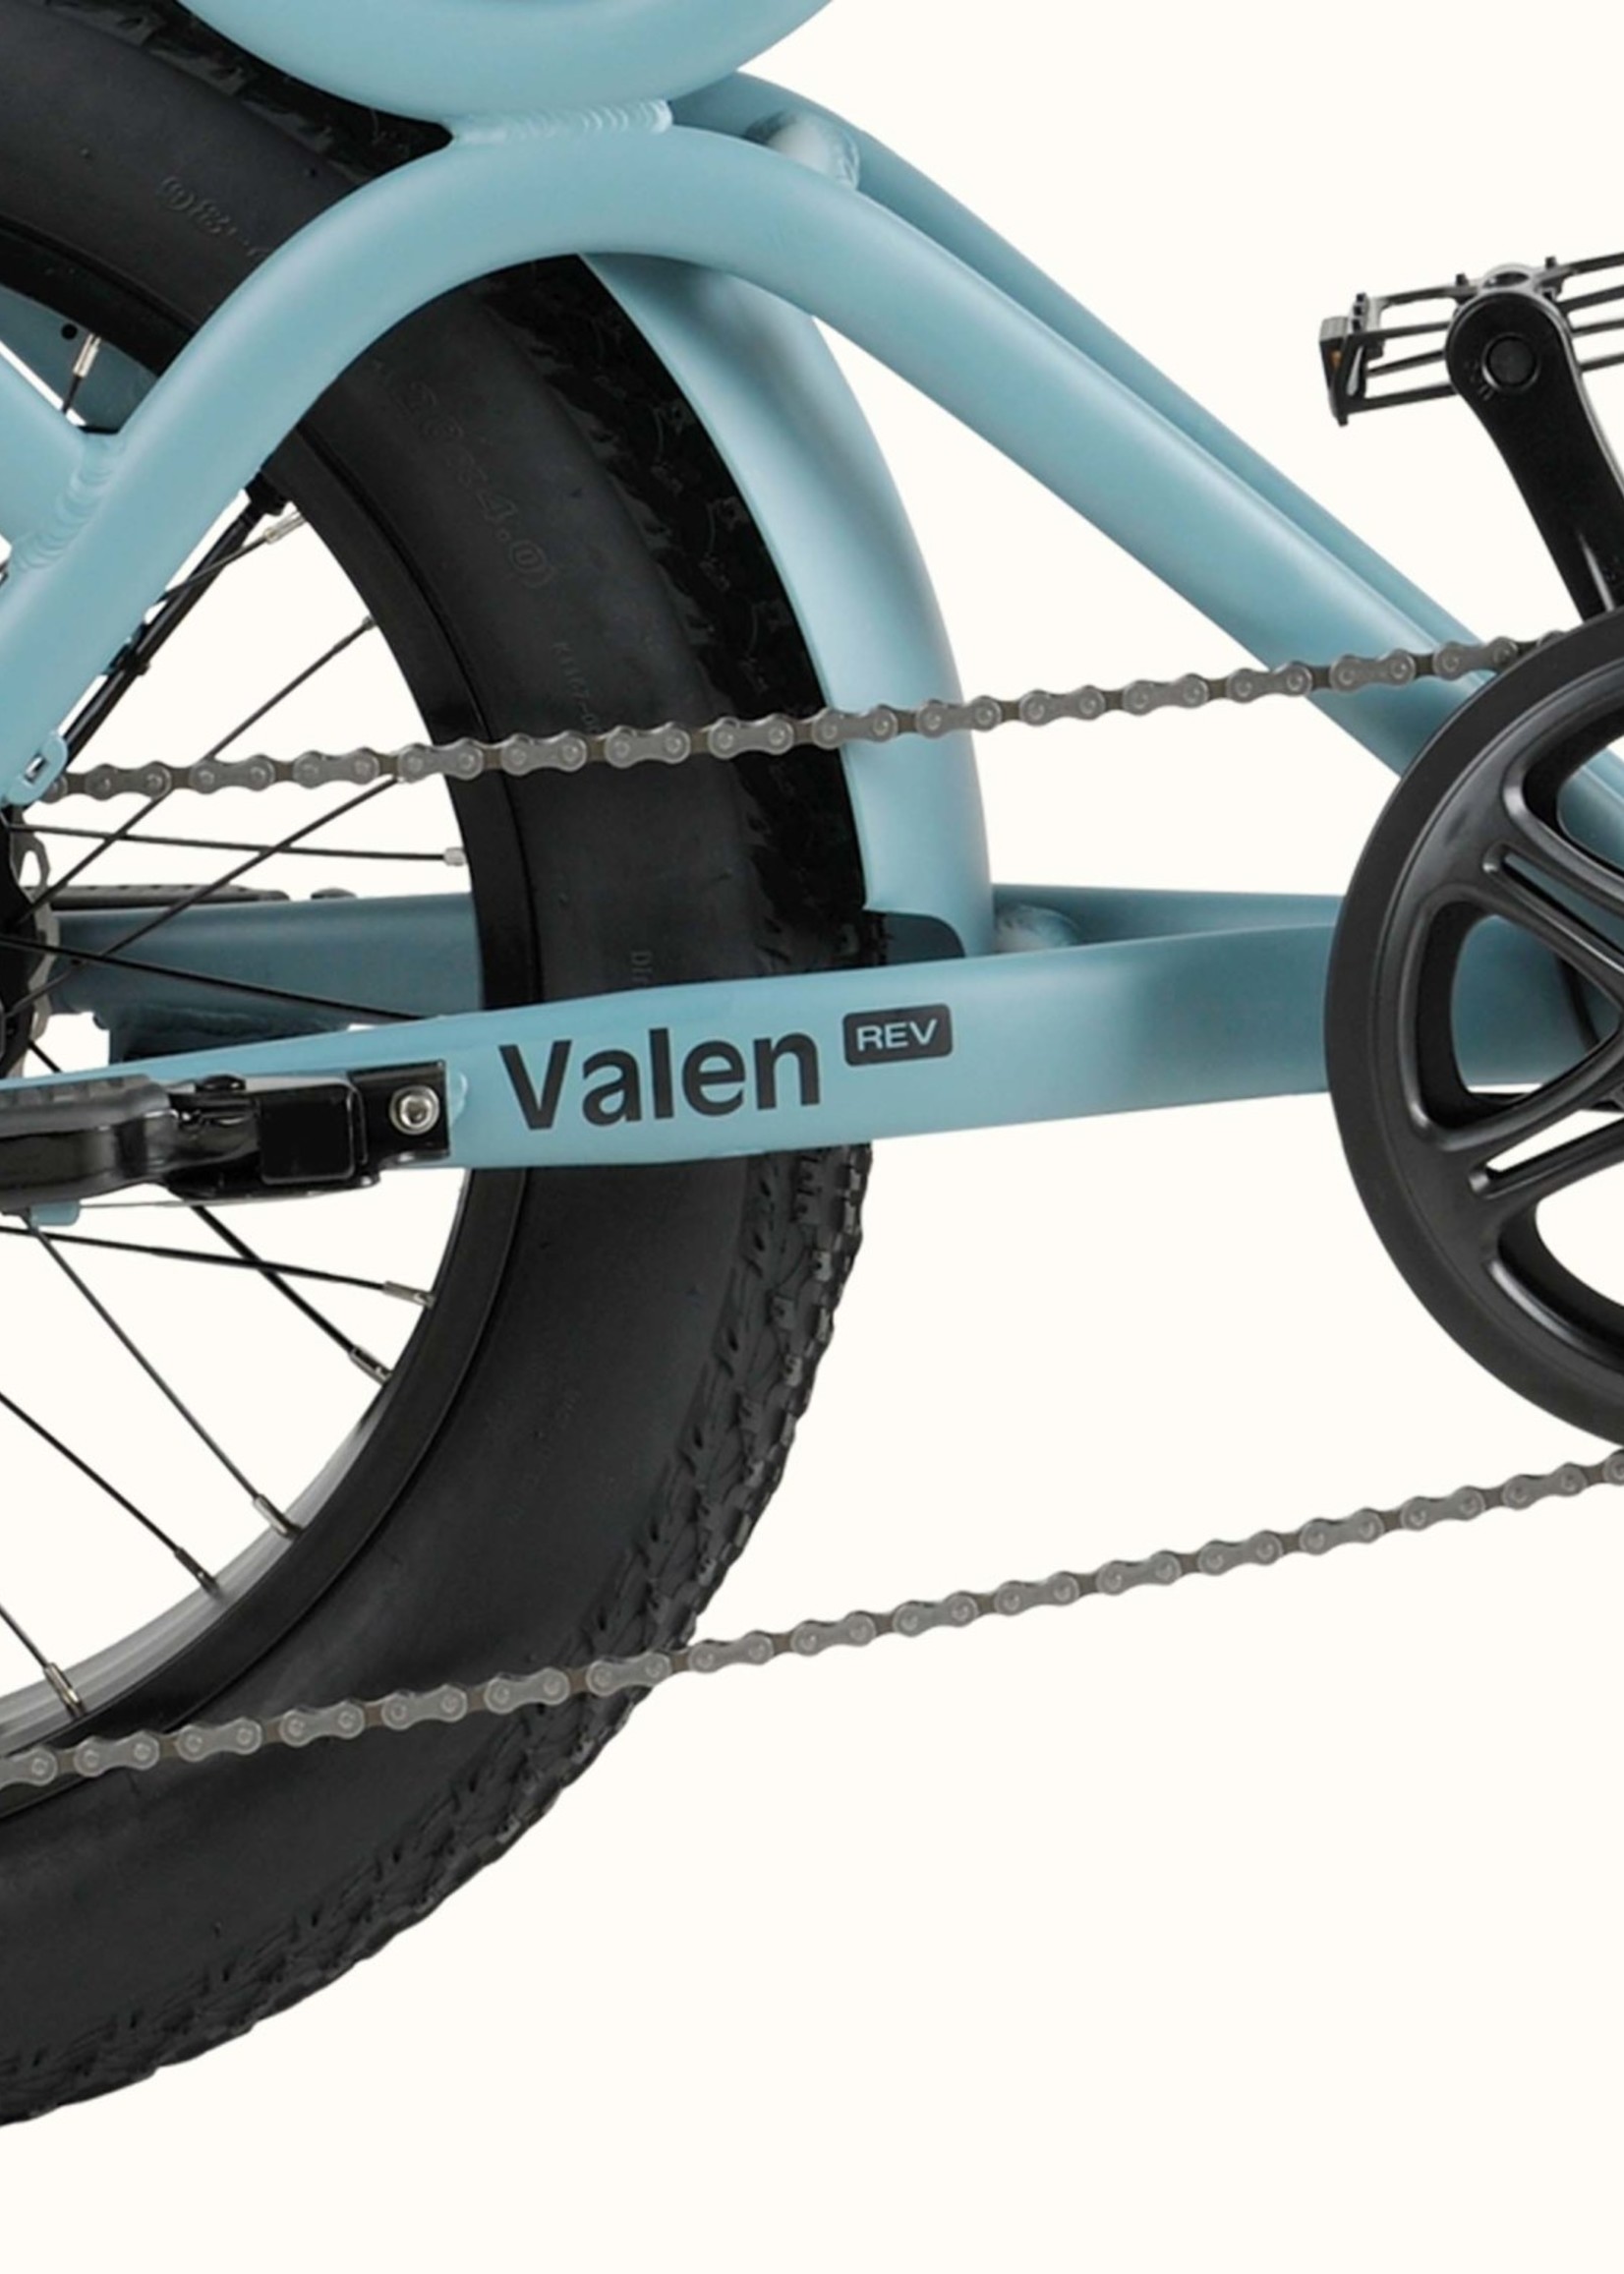 Valen Rev Electric Fat Tire Bike - 750 Watt